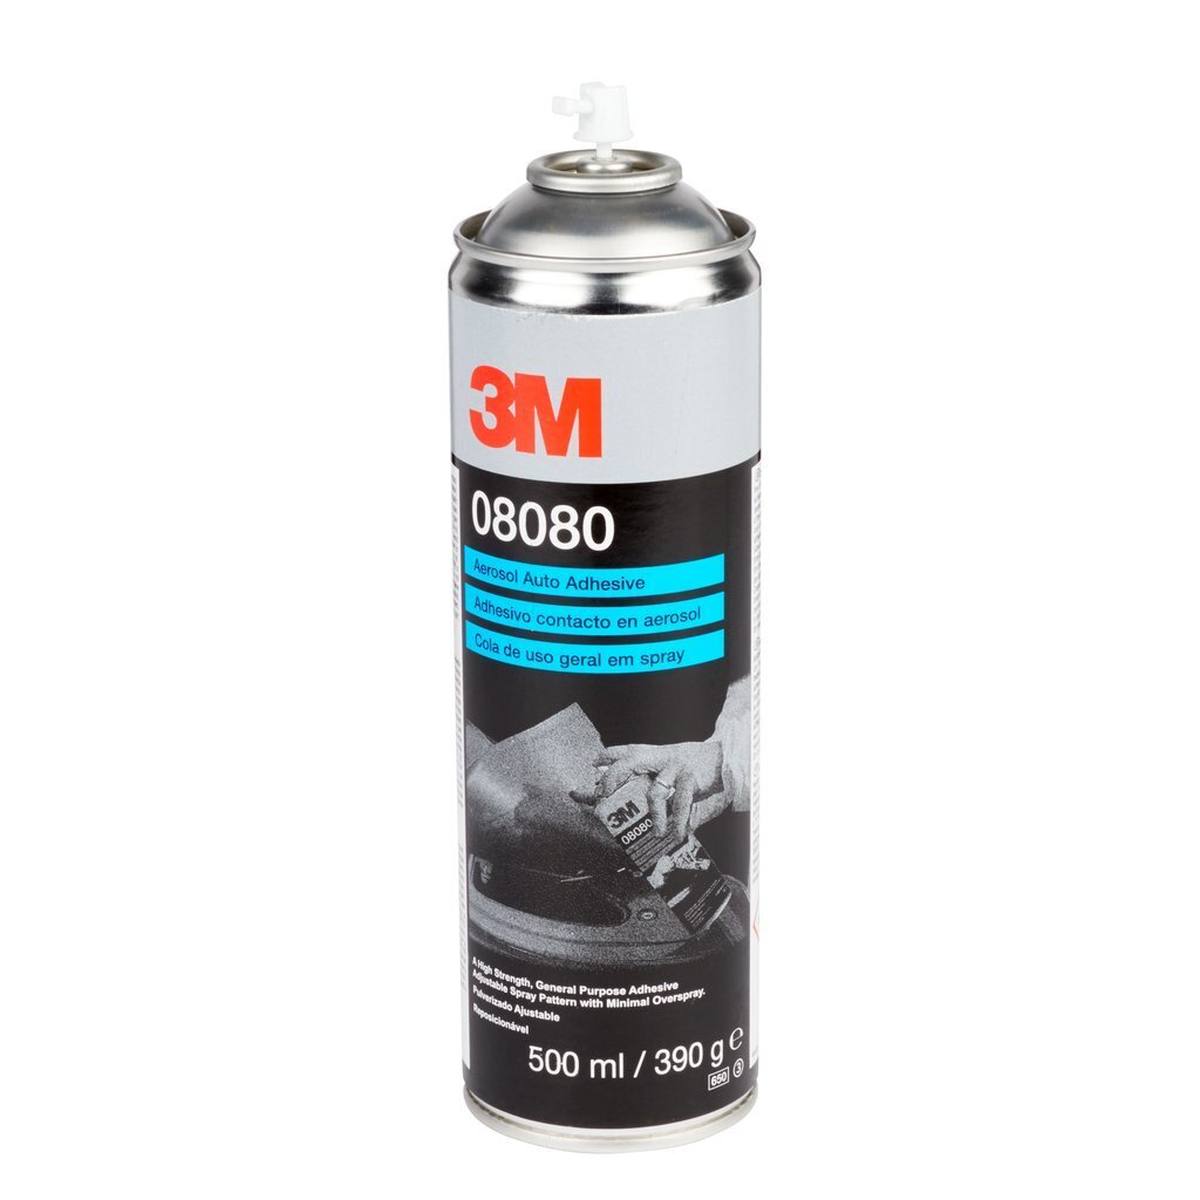 spray adesivo 3M per carrozzeria, 500 ml #08080